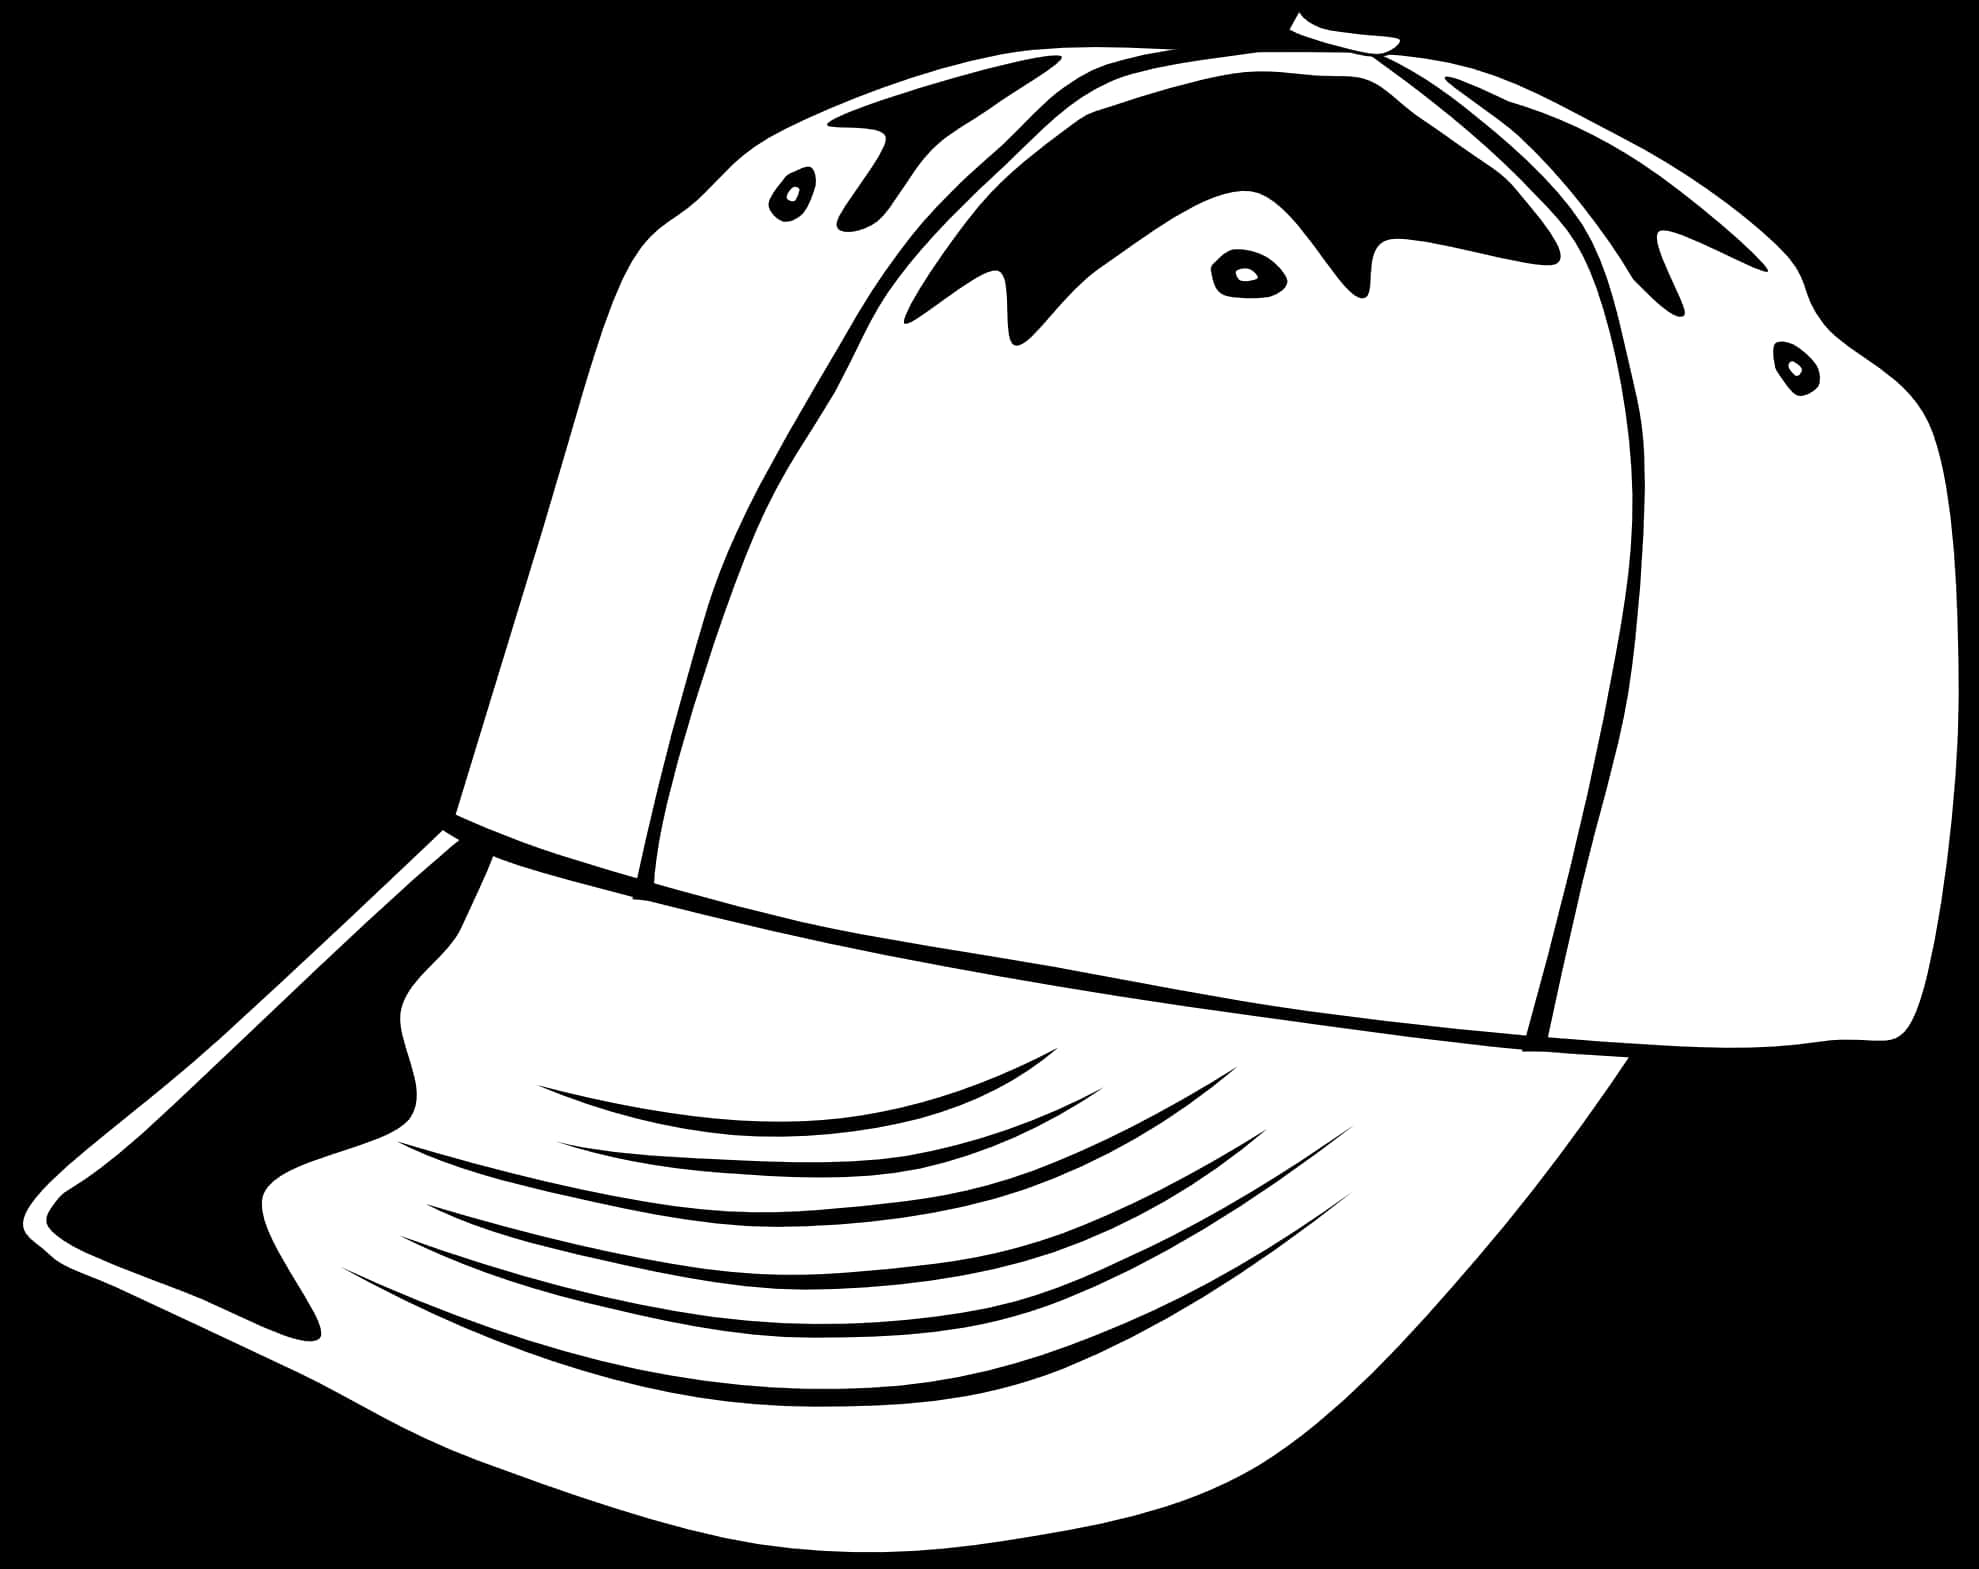 Baseball Cap Vector Illustration